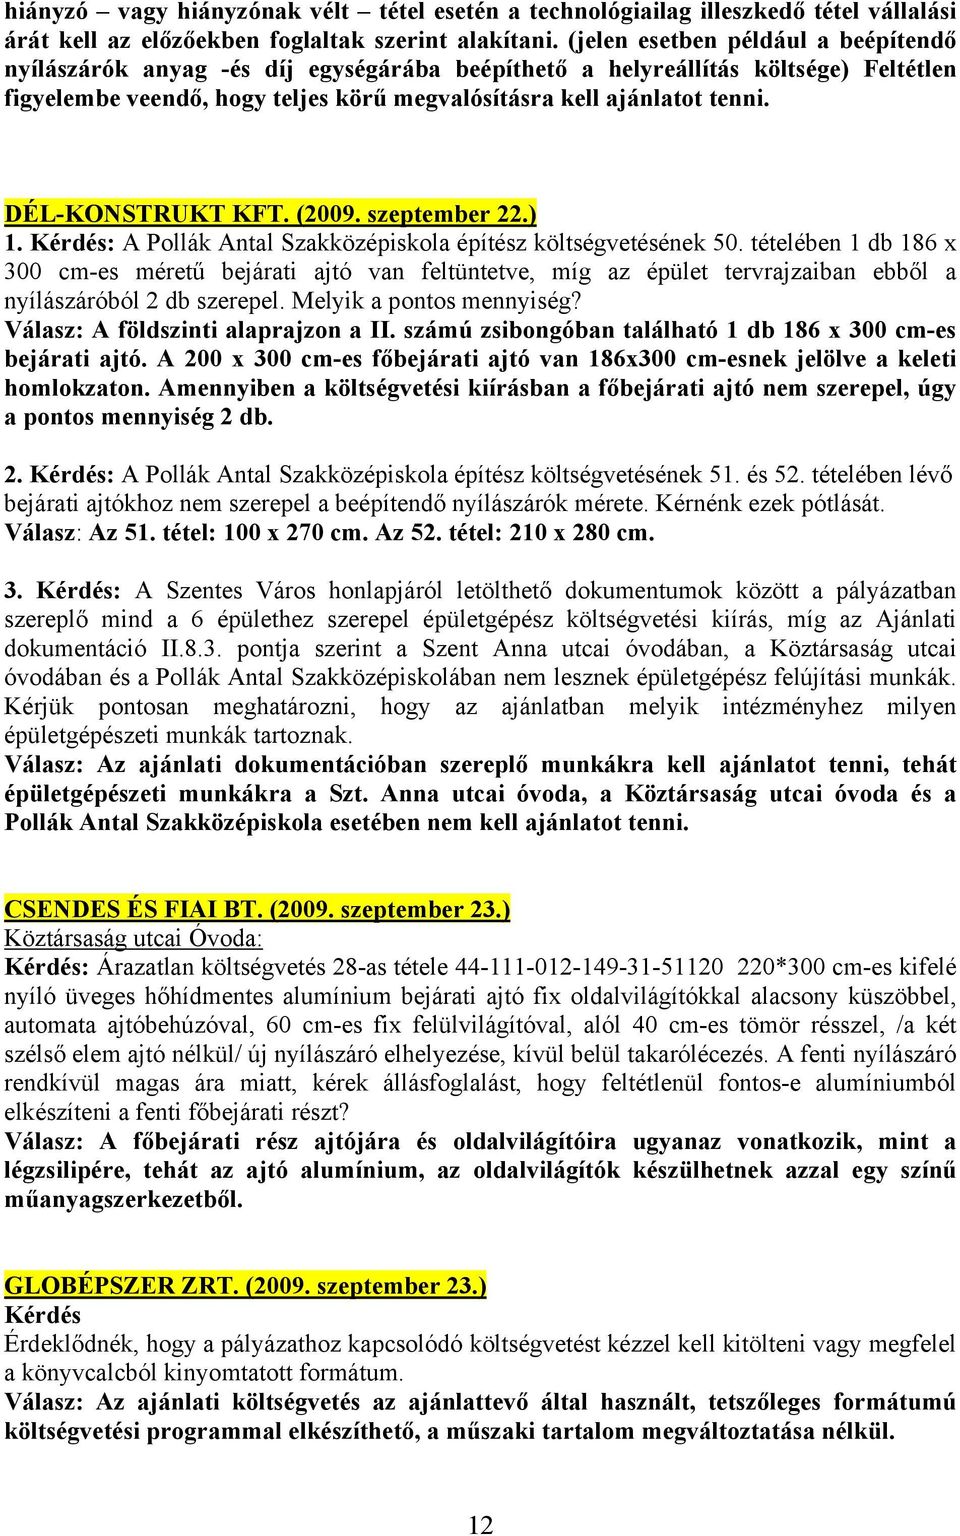 DÉL-KONSTRUKT KFT. (2009. szeptember 22.) 1. Kérdés: A Pollák Antal Szakközépiskola építész költségvetésének 50.